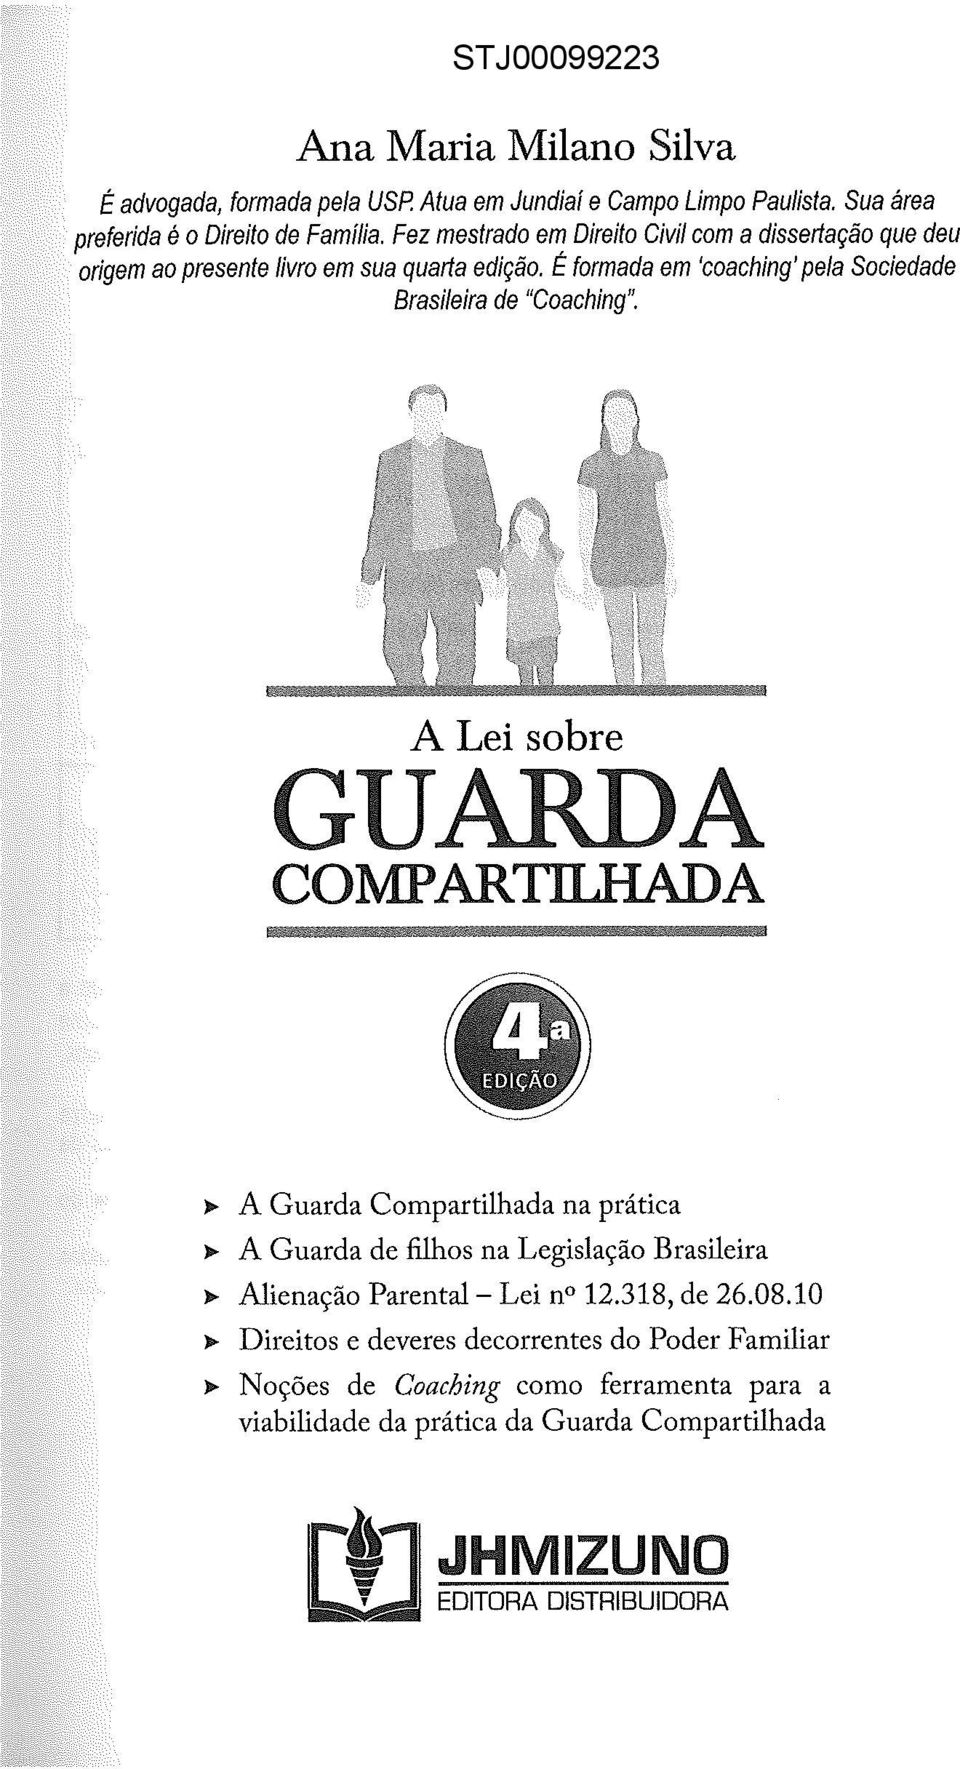 A ~ A Guarda Compartilhada na prática ~ A Guarda de filhos na Legislação Brasileira ~ Alienação Parental- Lei no 12.318, de 26.08.